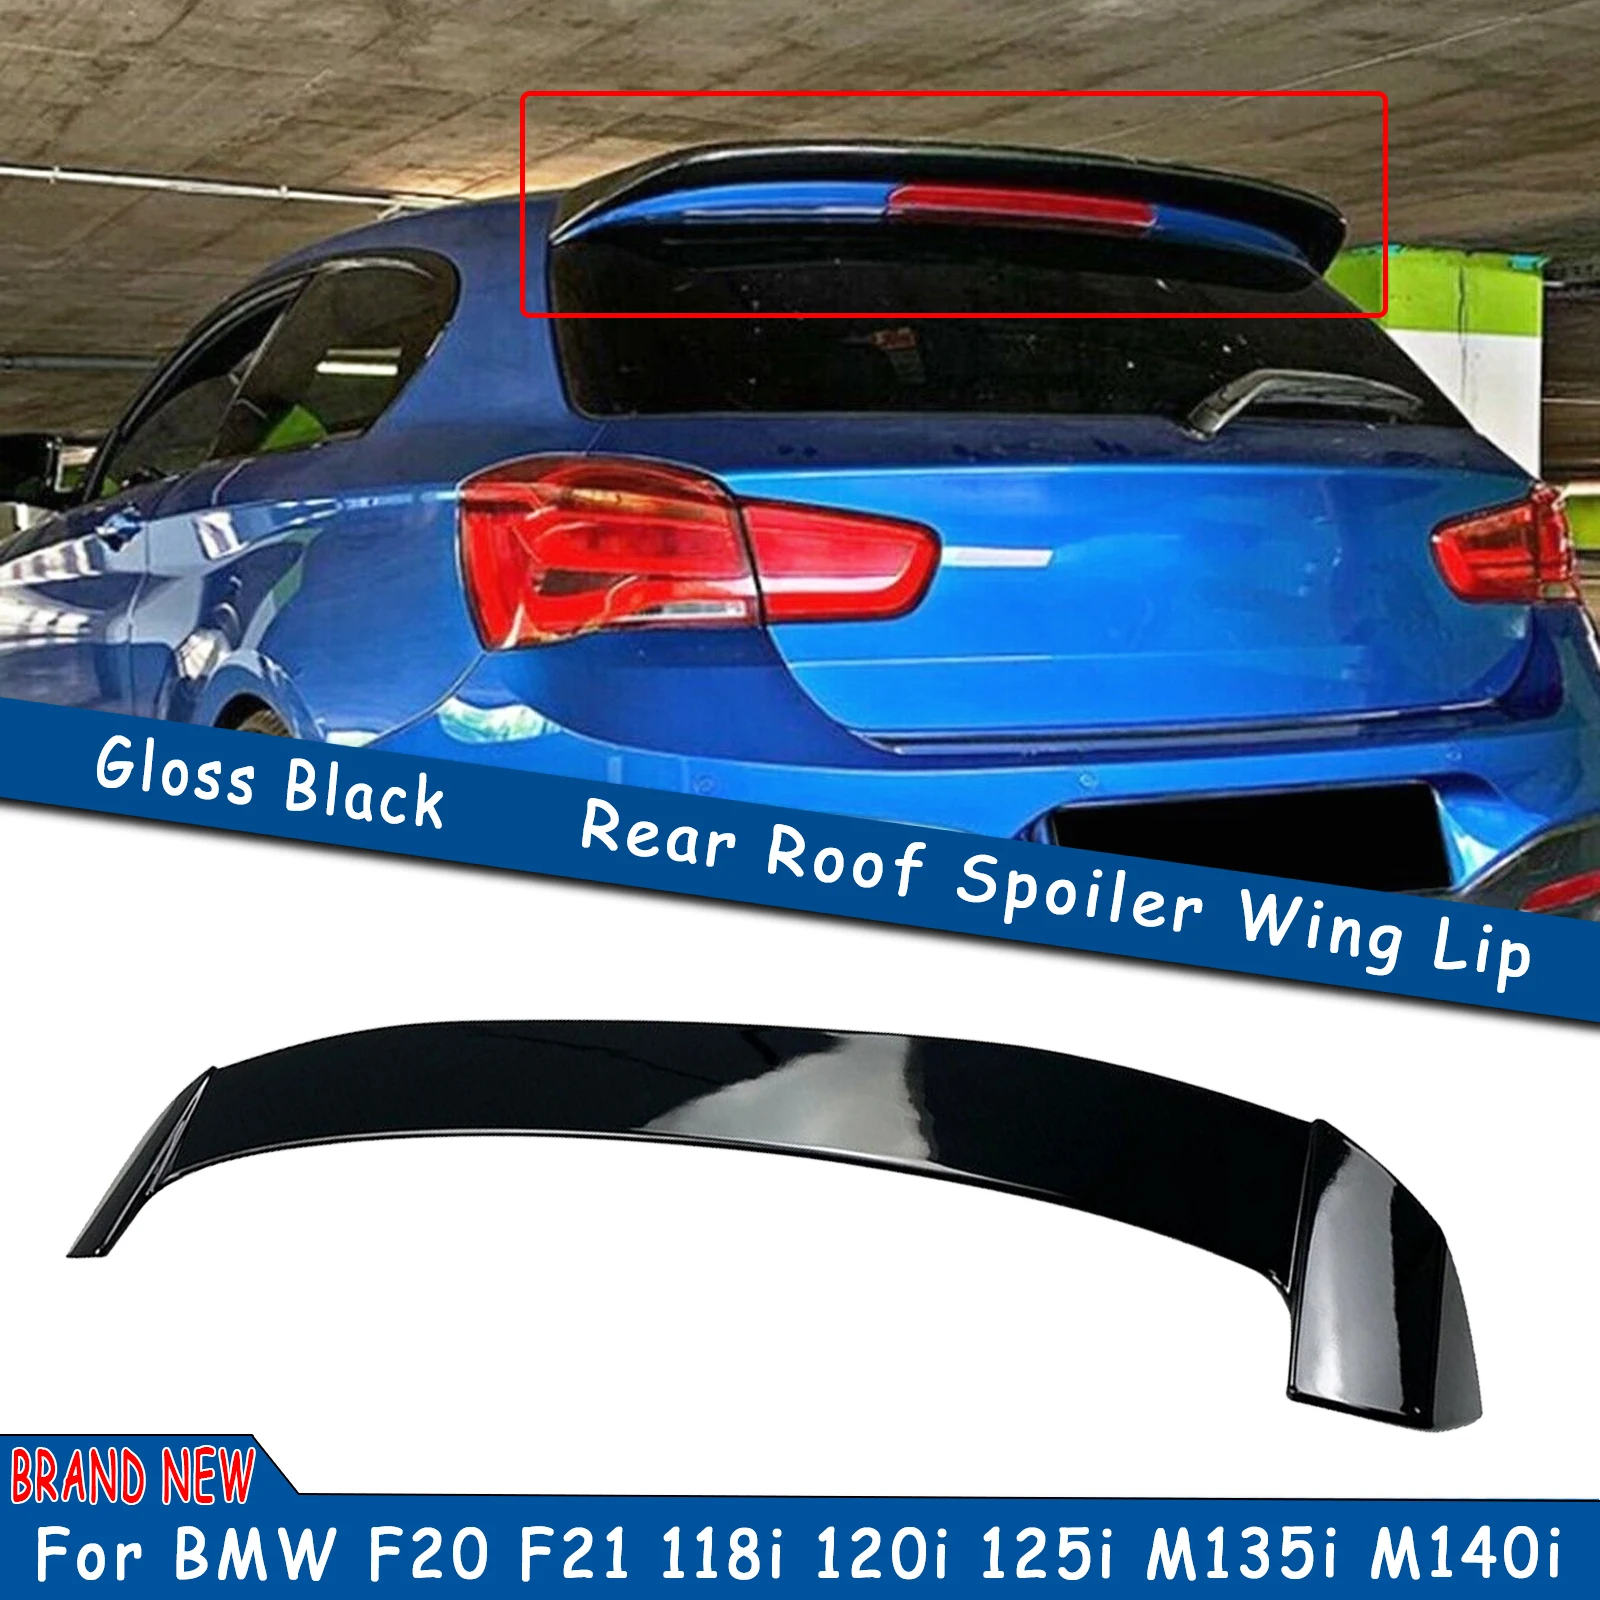 

Автомобильный задний спойлер для багажника, крыша, губа, крыло, задние ворота, отделка для BMW 1 серии F21 F20 118i 120i 125i M135i M140i хэтчбек 2011-2021